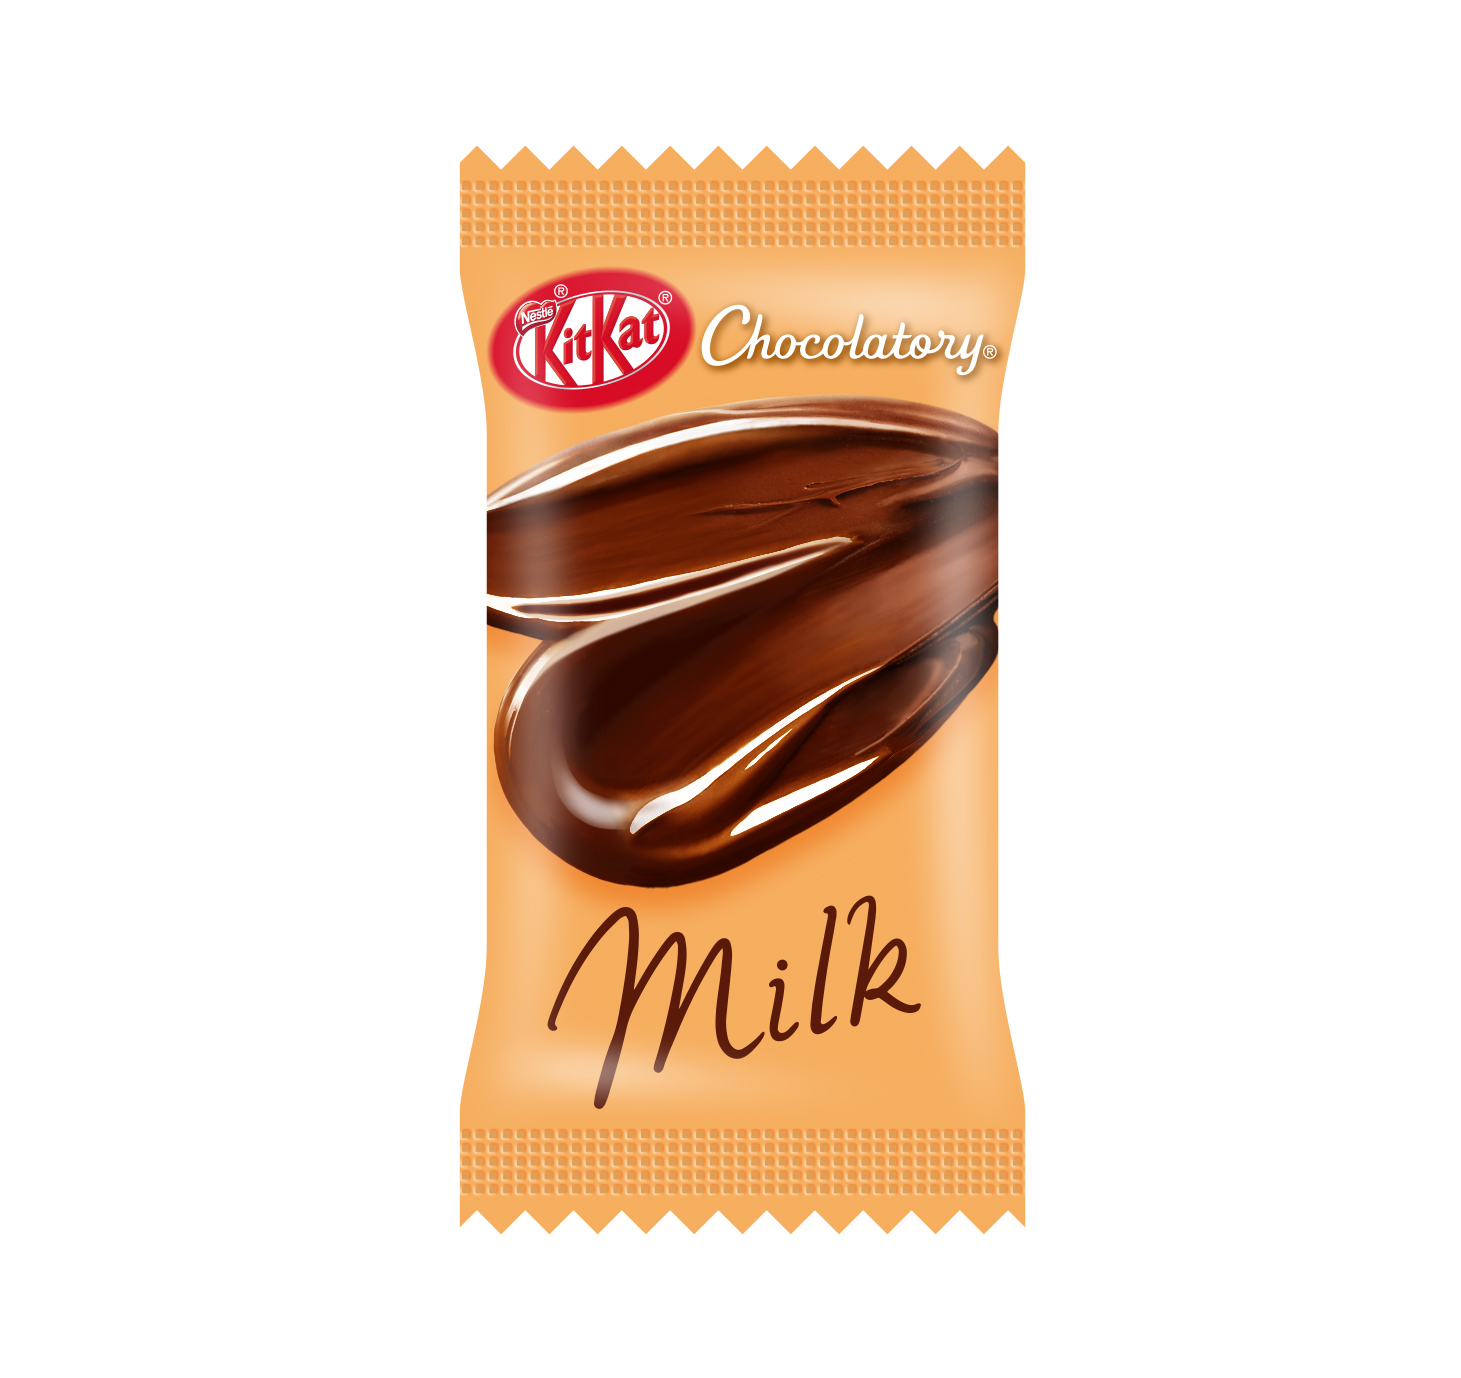 マーケティング ネスレ日本 ネスレ エアロ ミニ 72g×12袋 チョコート お菓子 チョコ ミニバー チョコバー 個包装 スナック菓子 シェア 